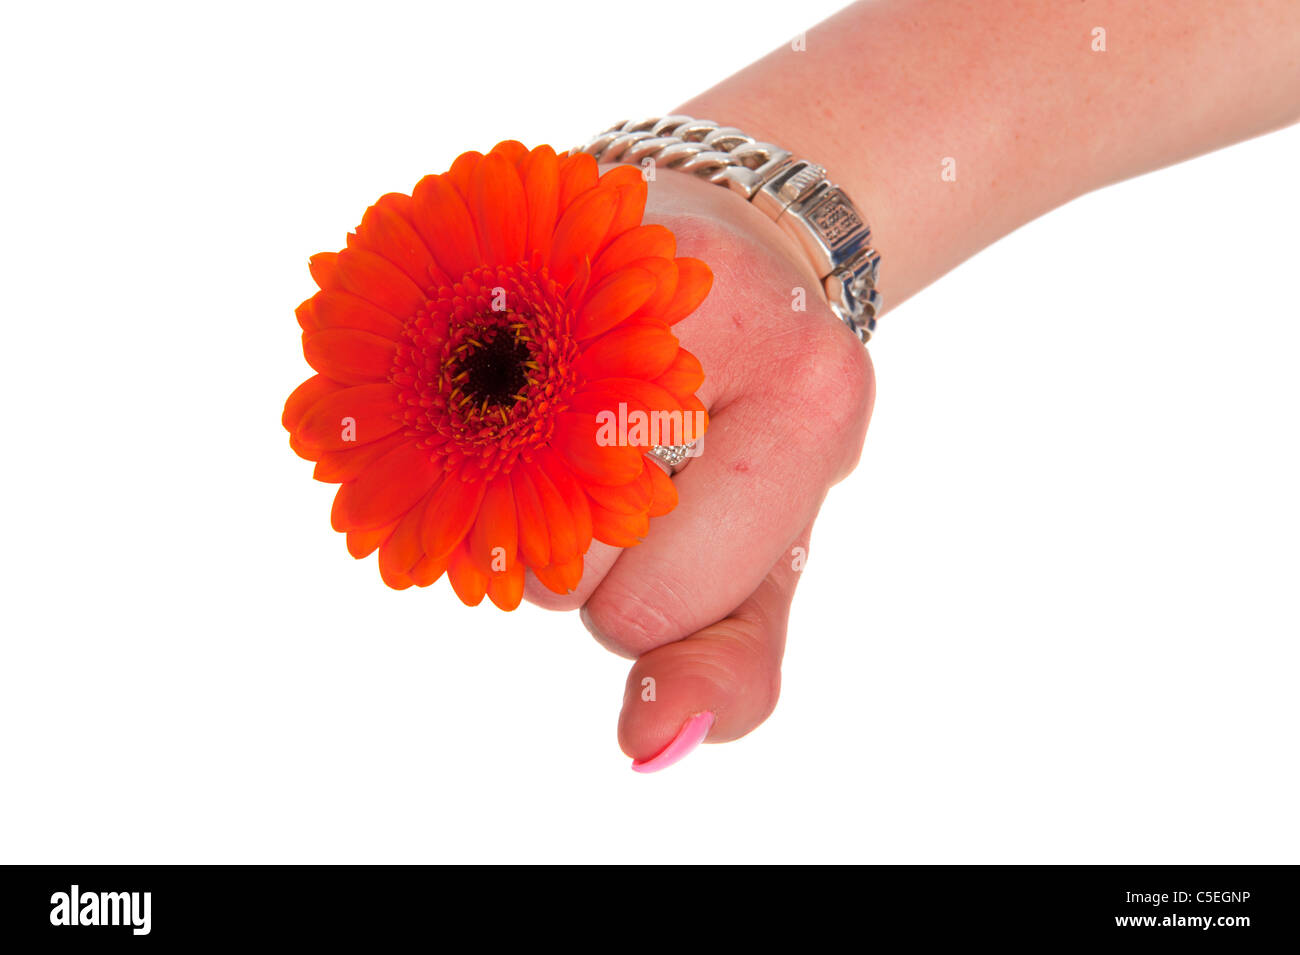 Weibliche Hand hält eine orangefarbene Blume Gerber auf weißem Hintergrund Stockfoto